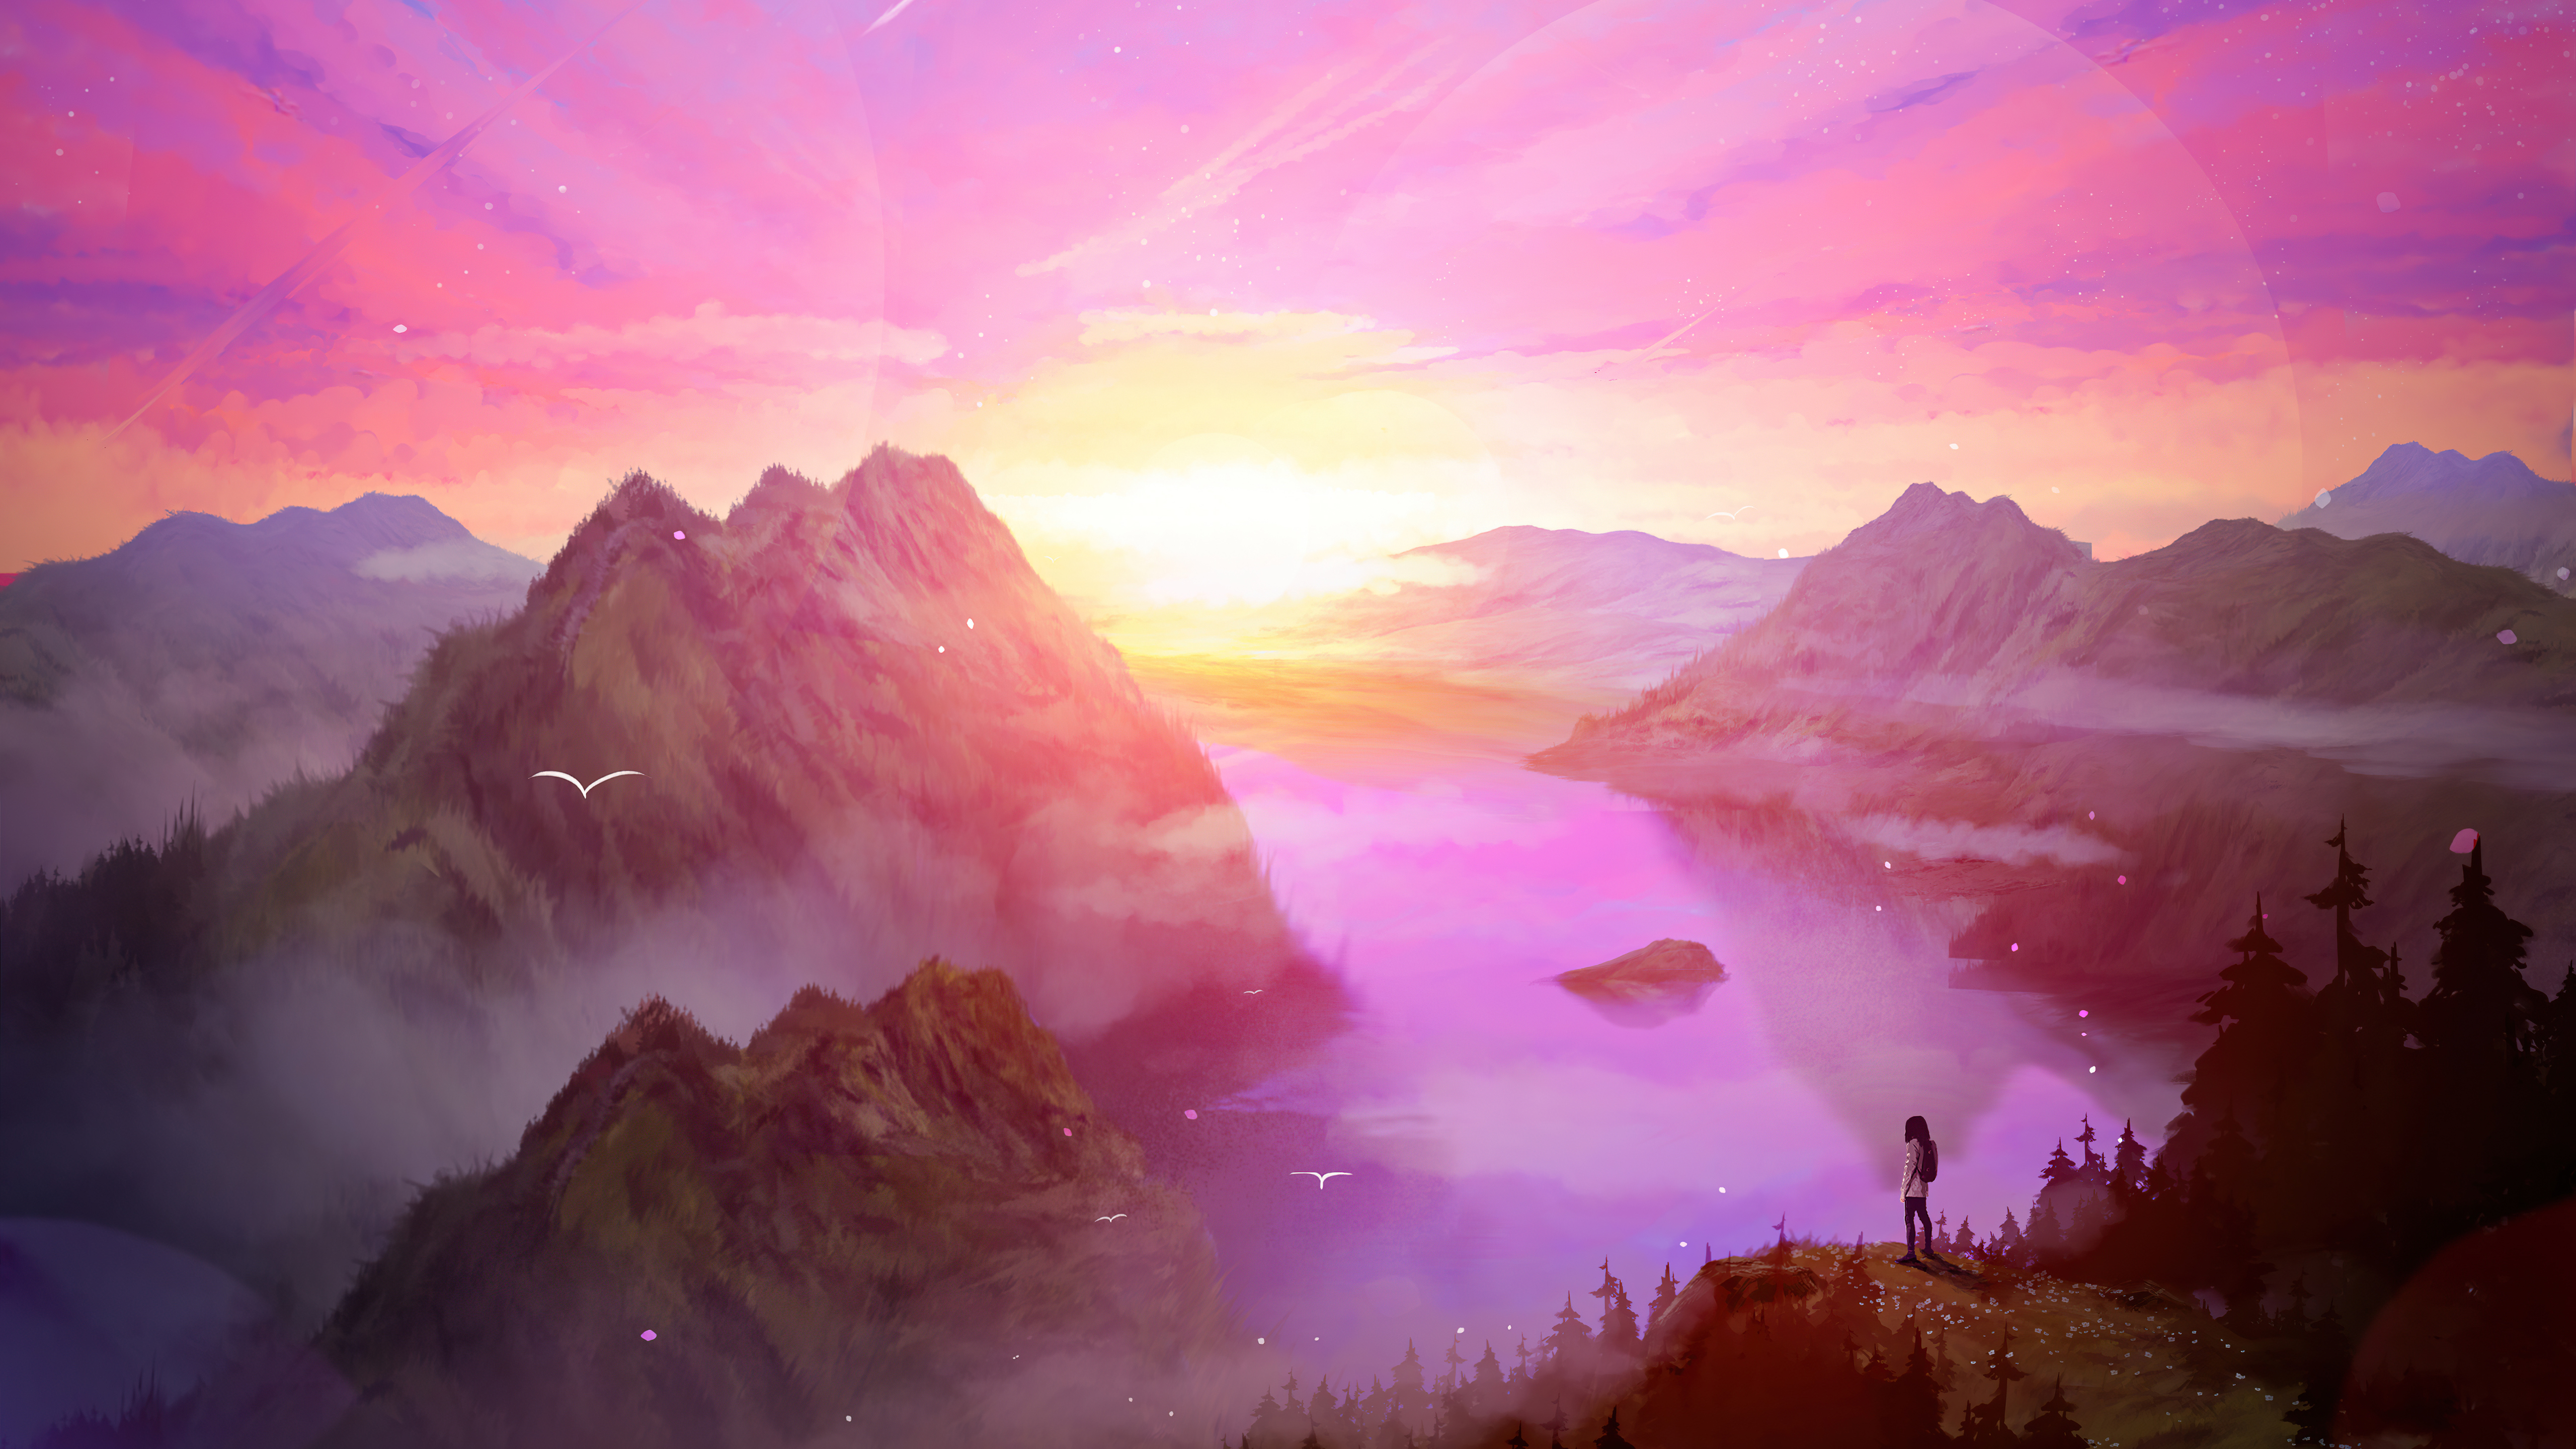 Sunrise in the mountains Digital Art Wallpaper 5k Ultra HD ID:8024